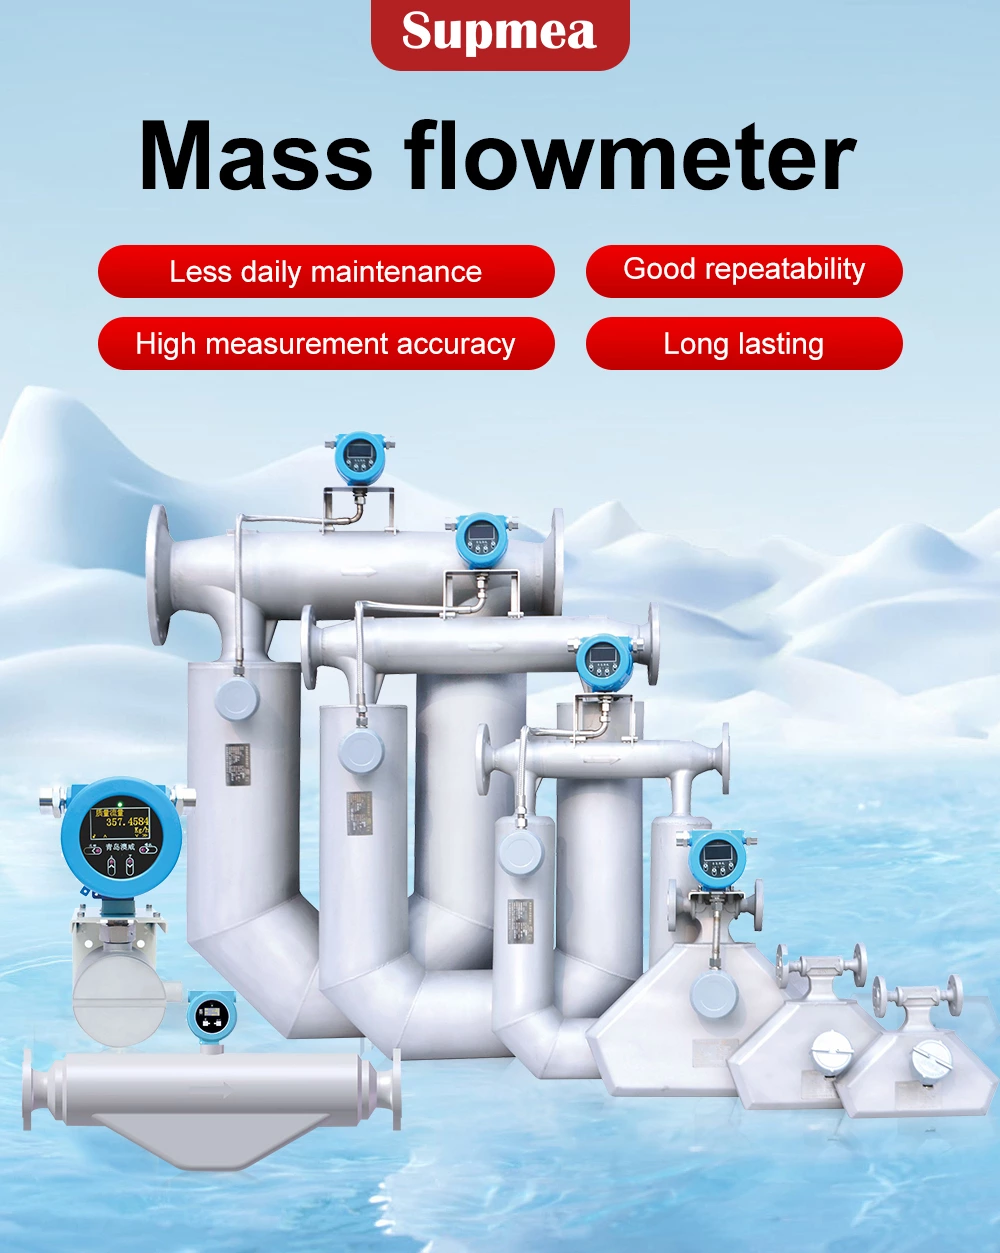 Mass flowmeter